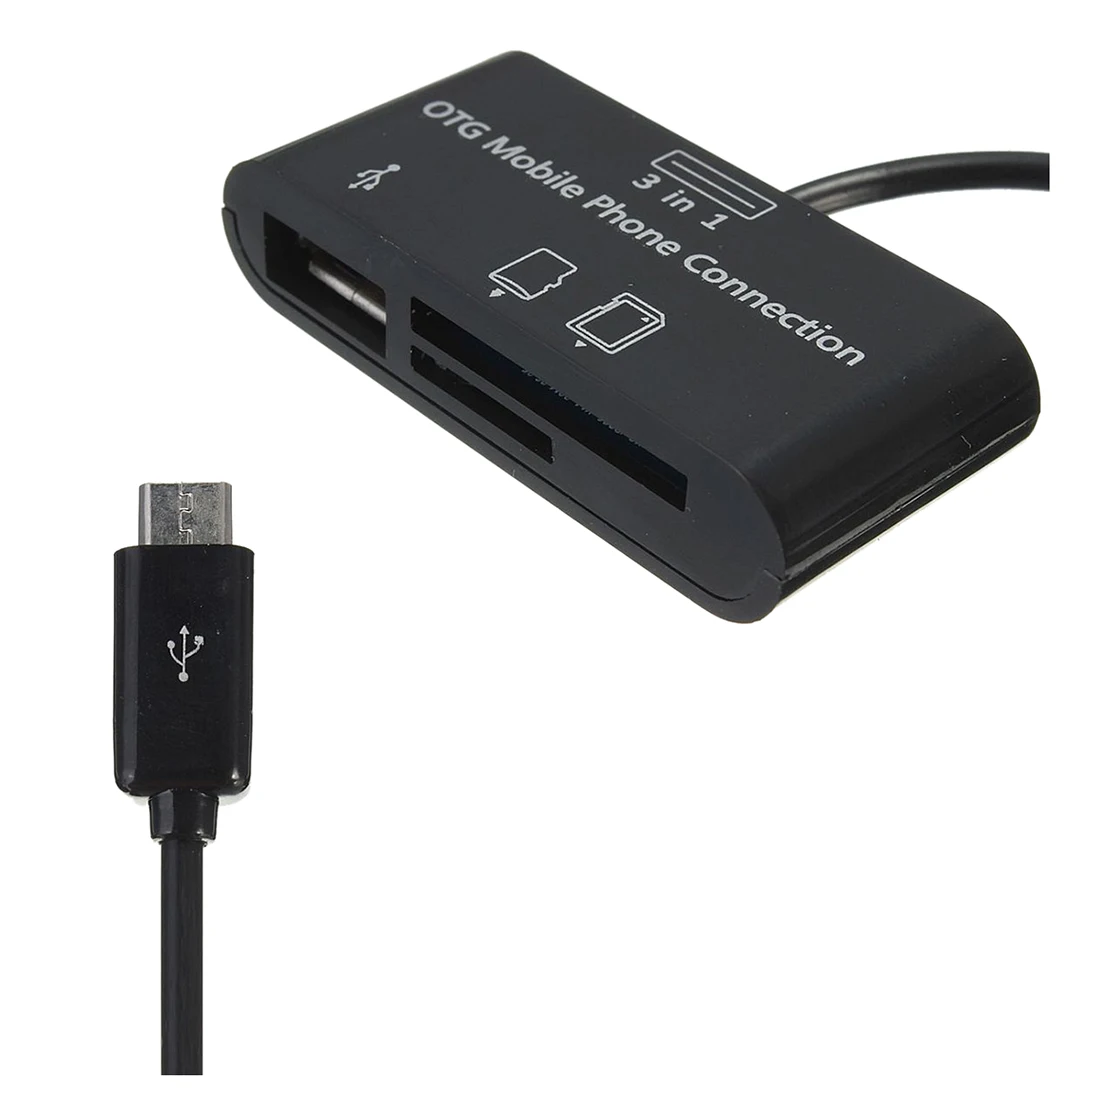 3в1 Micro USB адаптер SD кардридер для OTG мобильного телефона новый черный